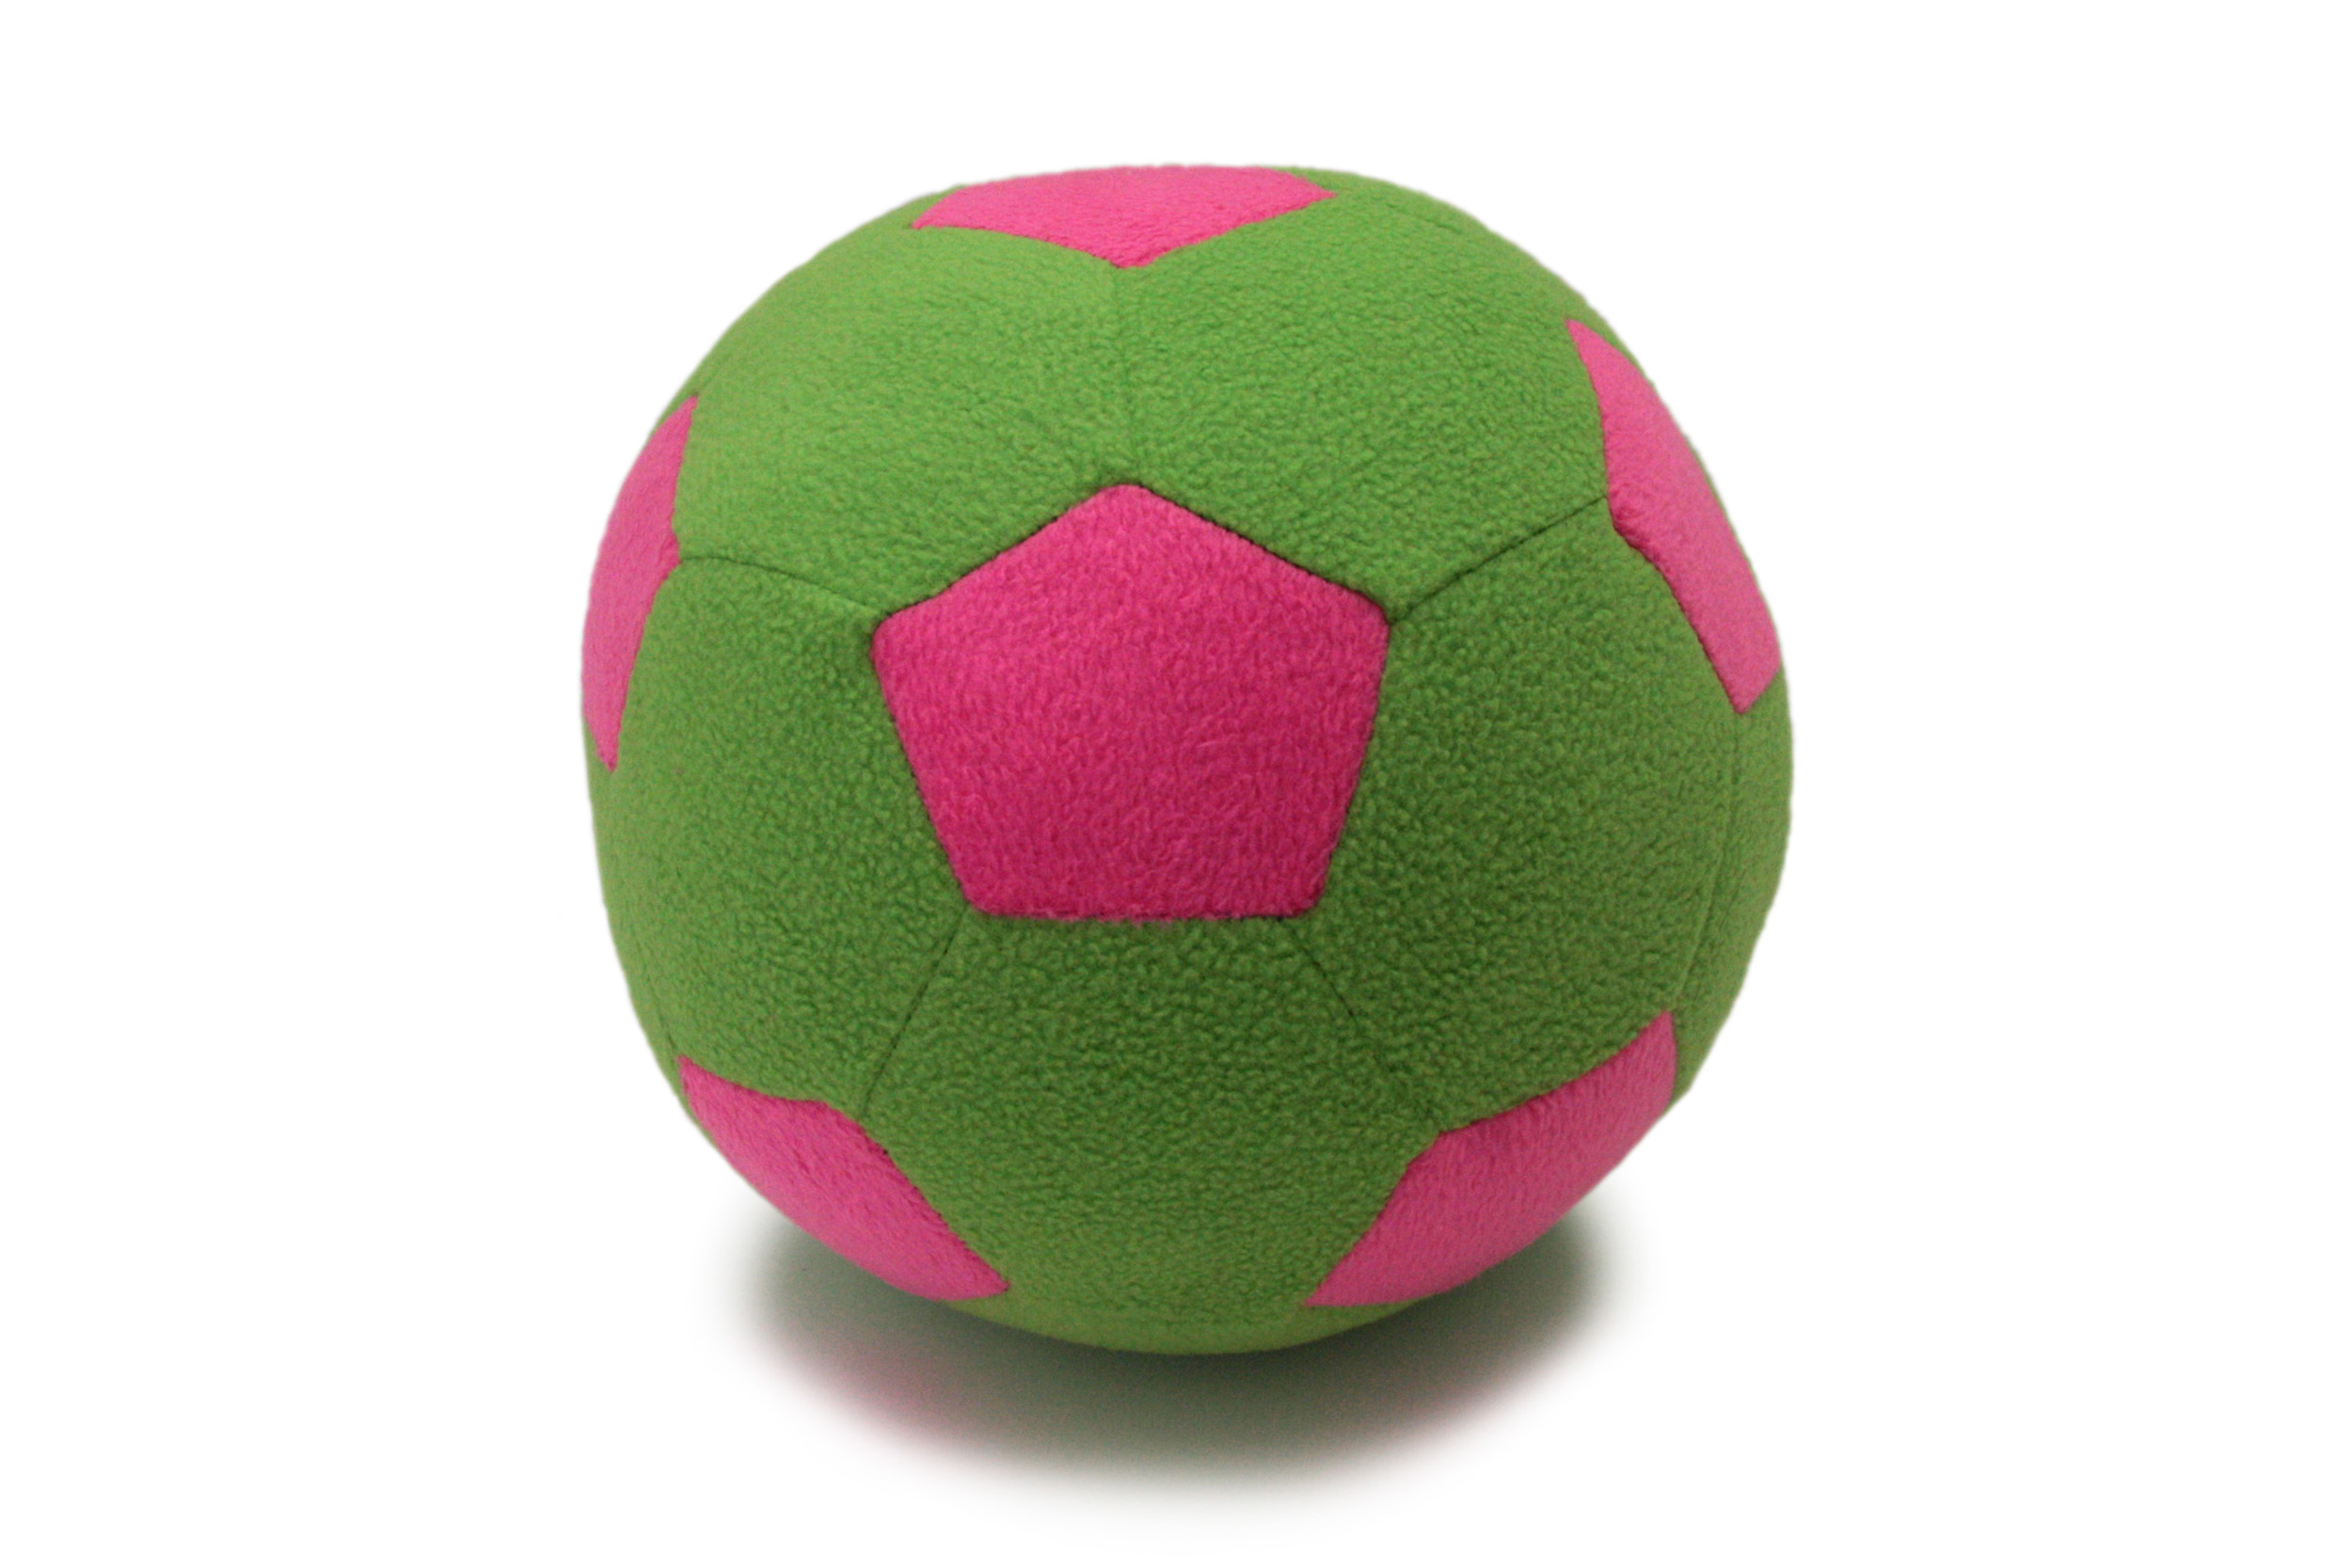 фото Детский мяч magic bear toys f-100/lgp мяч мягкий цвет светло-зеленый, розовый 23 см